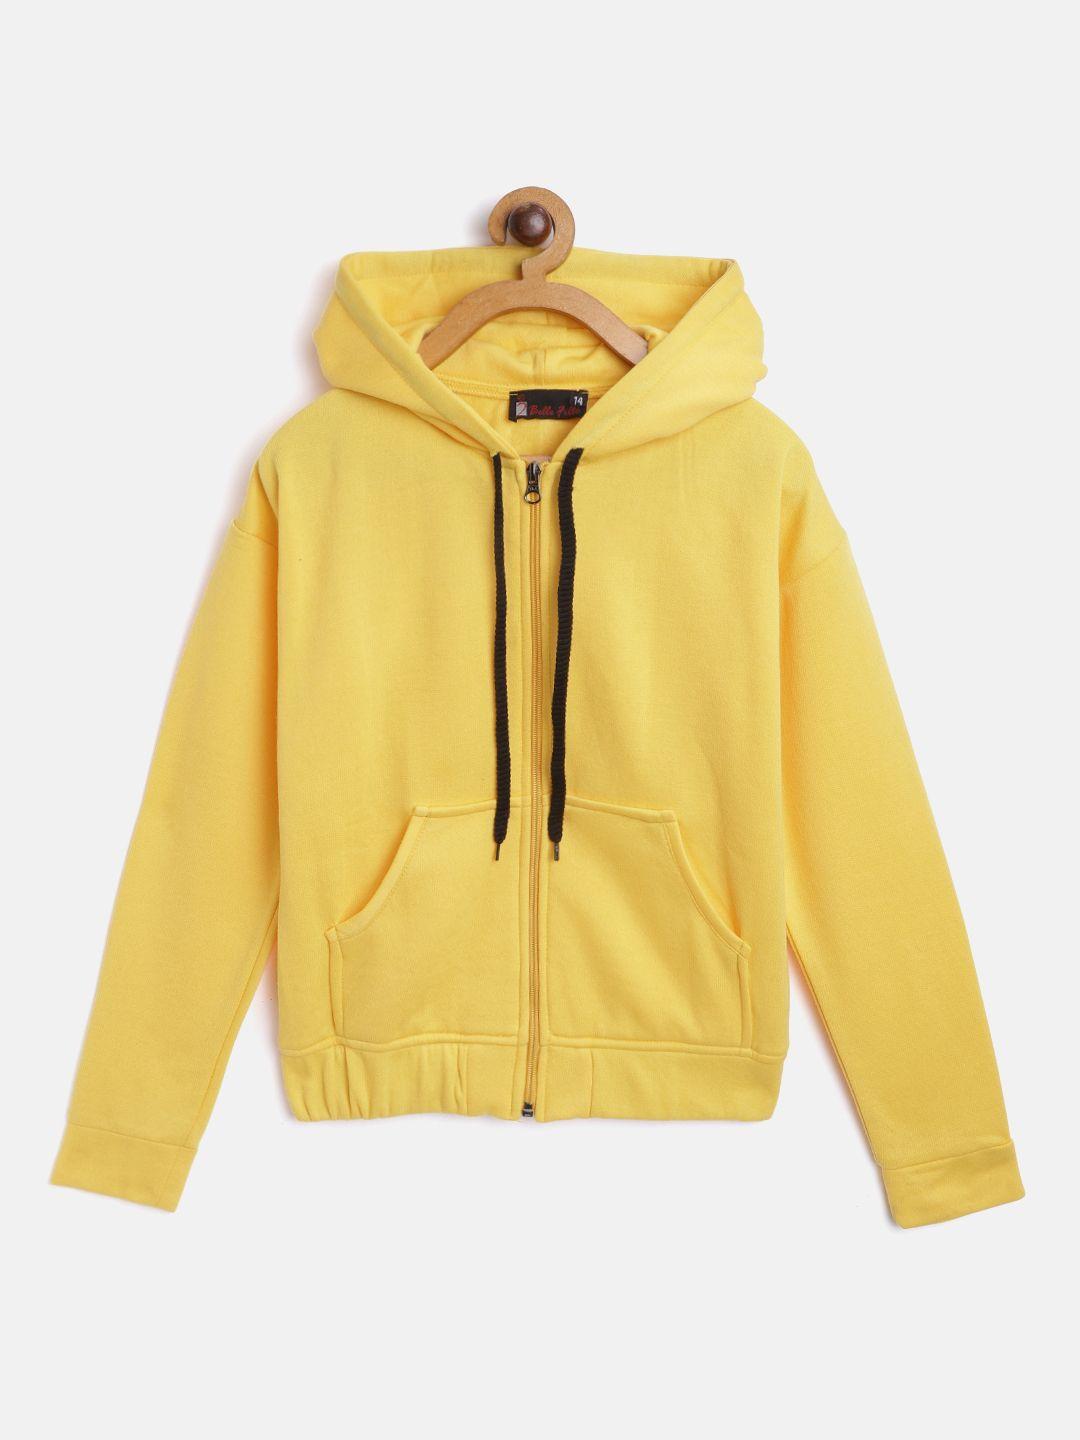 belle fille unisex kids yellow fleece lightweight longline open front jacket